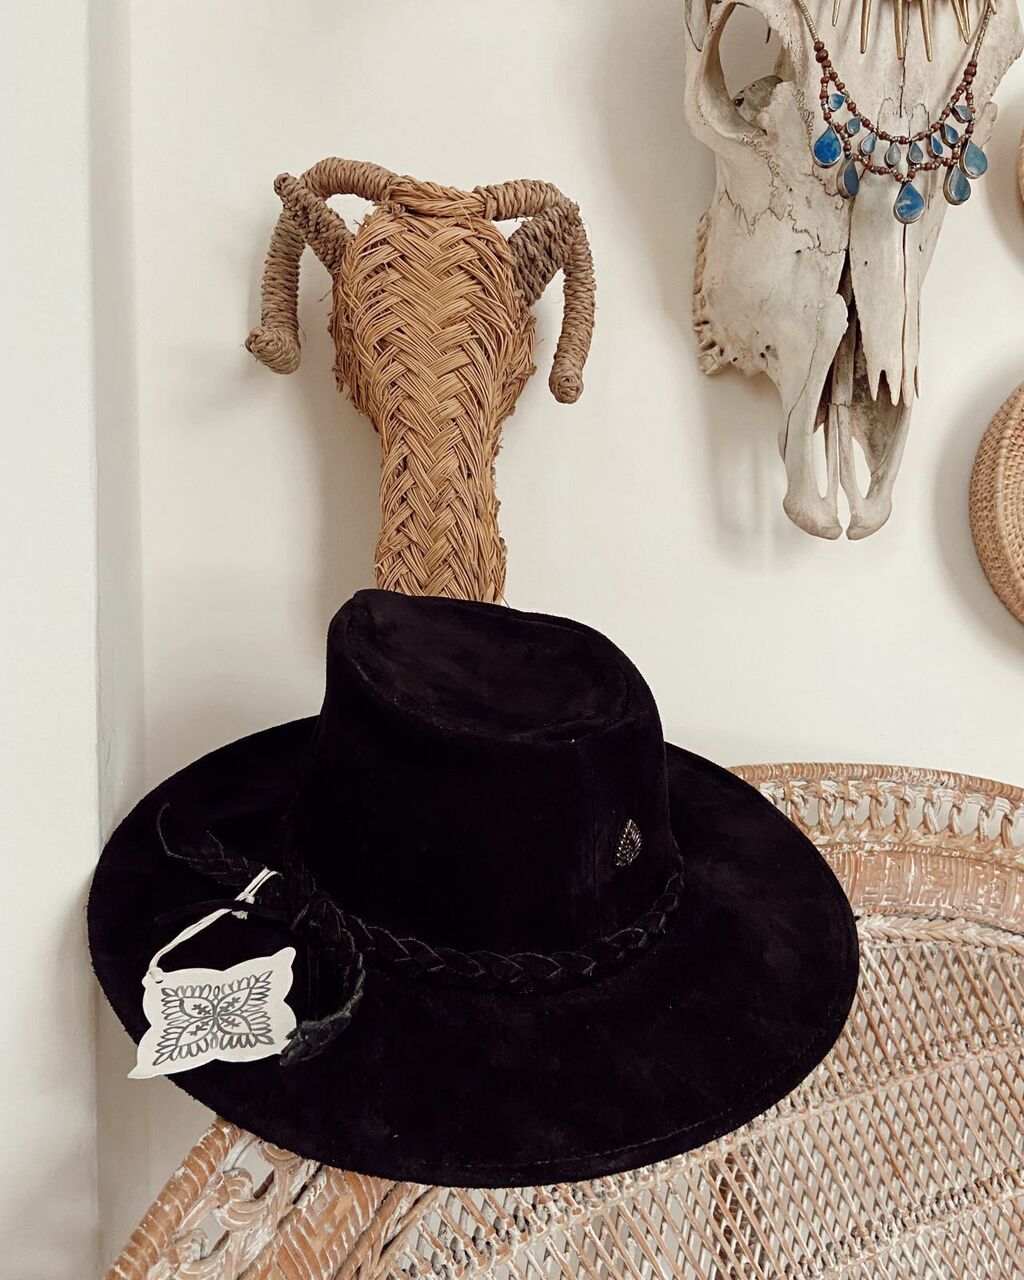 Sombrero Cowboy Coquita - Comprar en joaquinagurruchaga